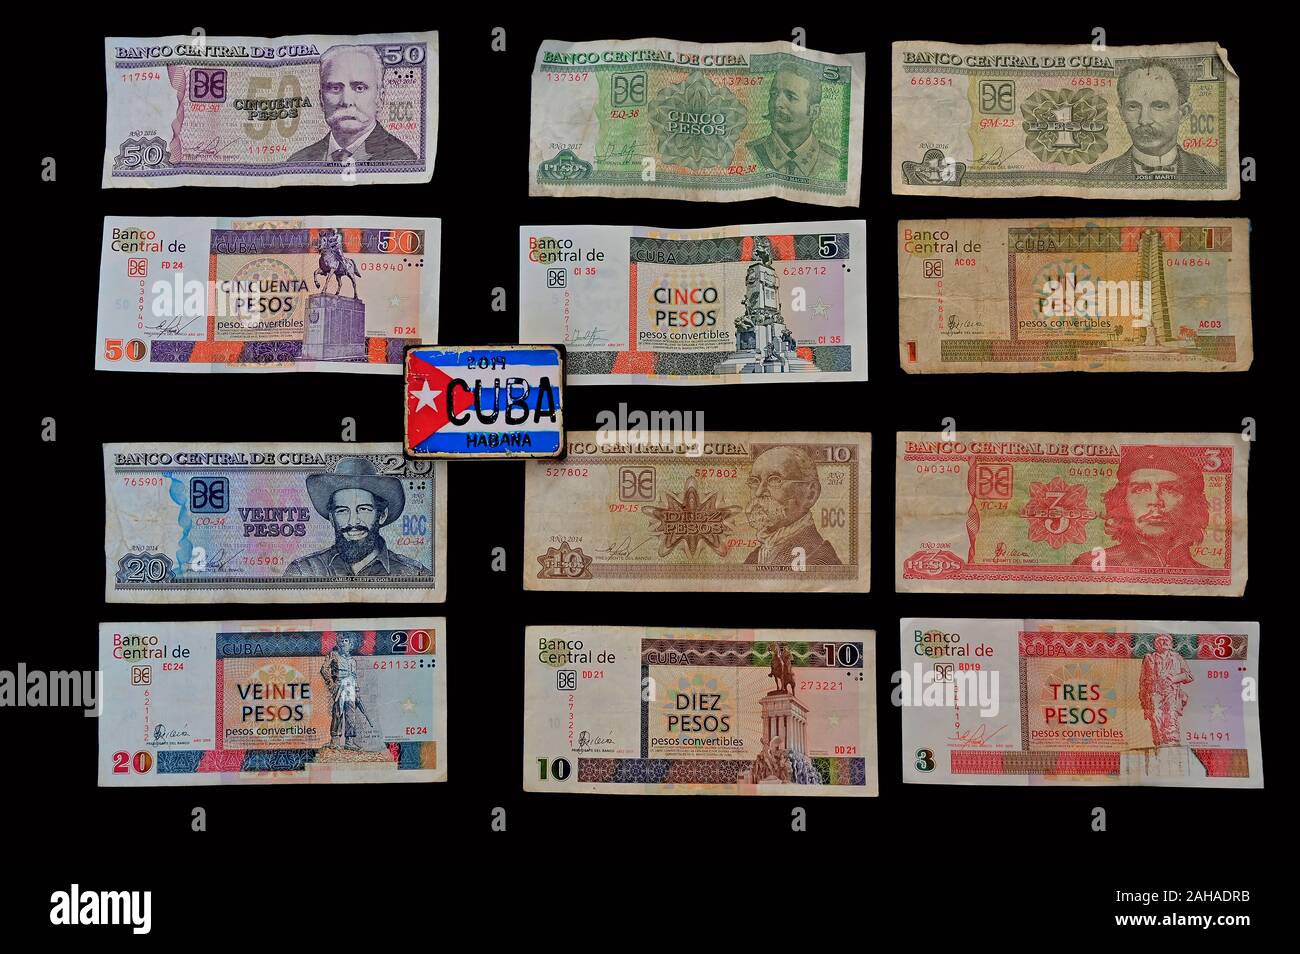 Valuta cubana immagini e fotografie stock ad alta risoluzione - Alamy